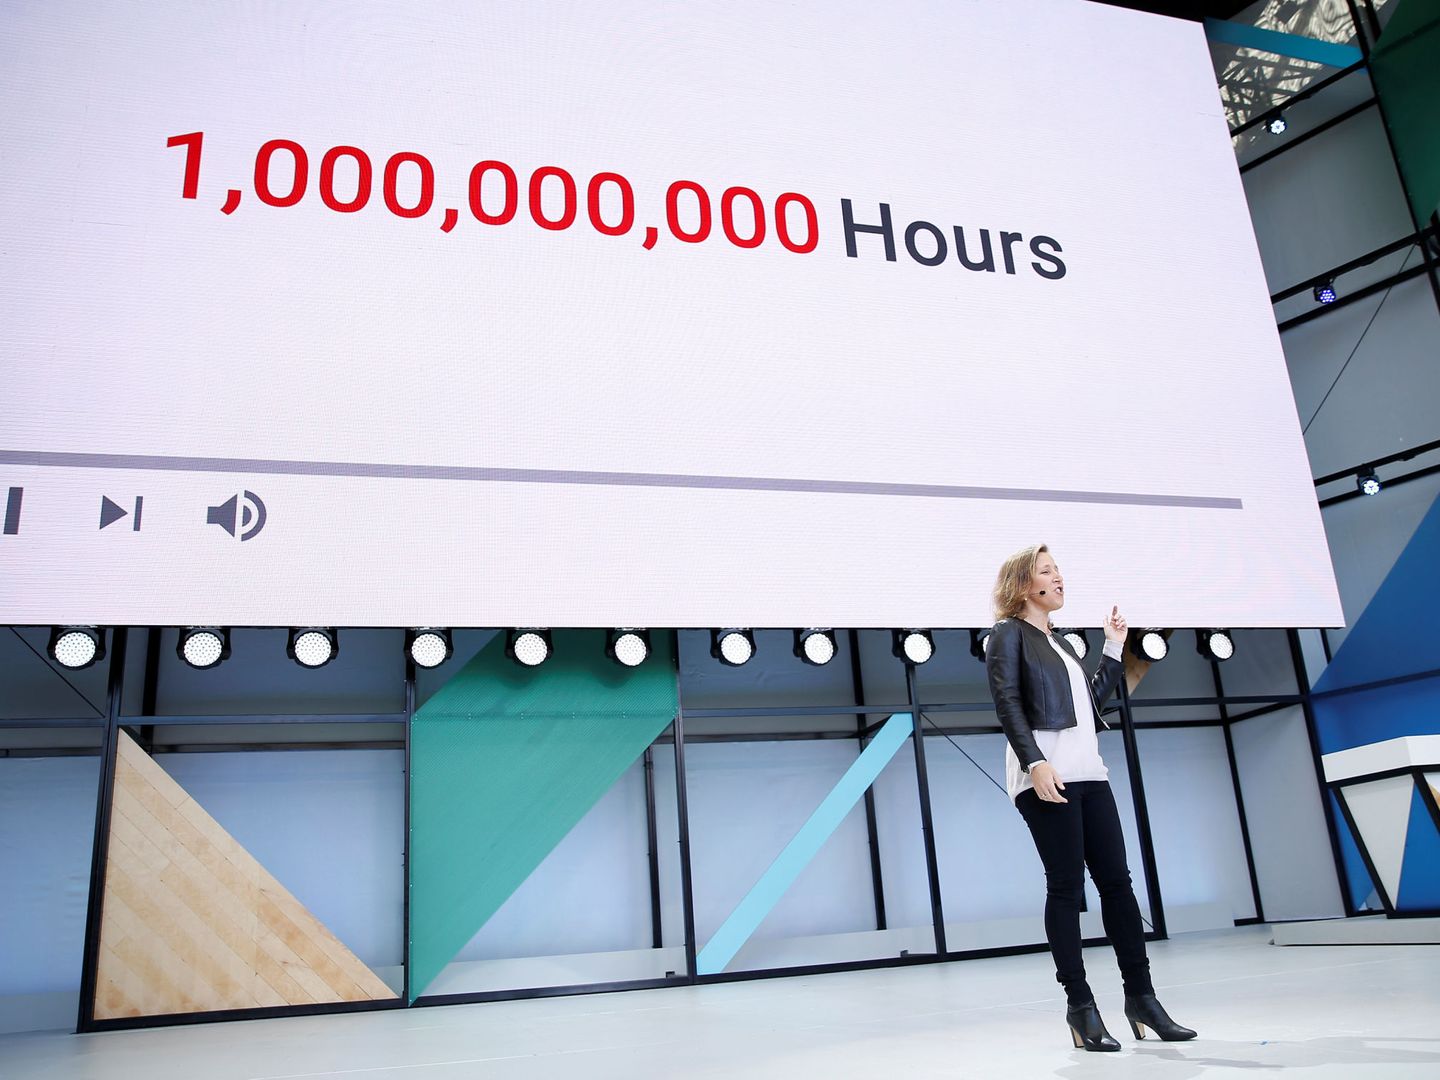 La CEO de YouTube Susan Wojcicki mostrando los 'records' de su compañía. (Foto: YouTube)